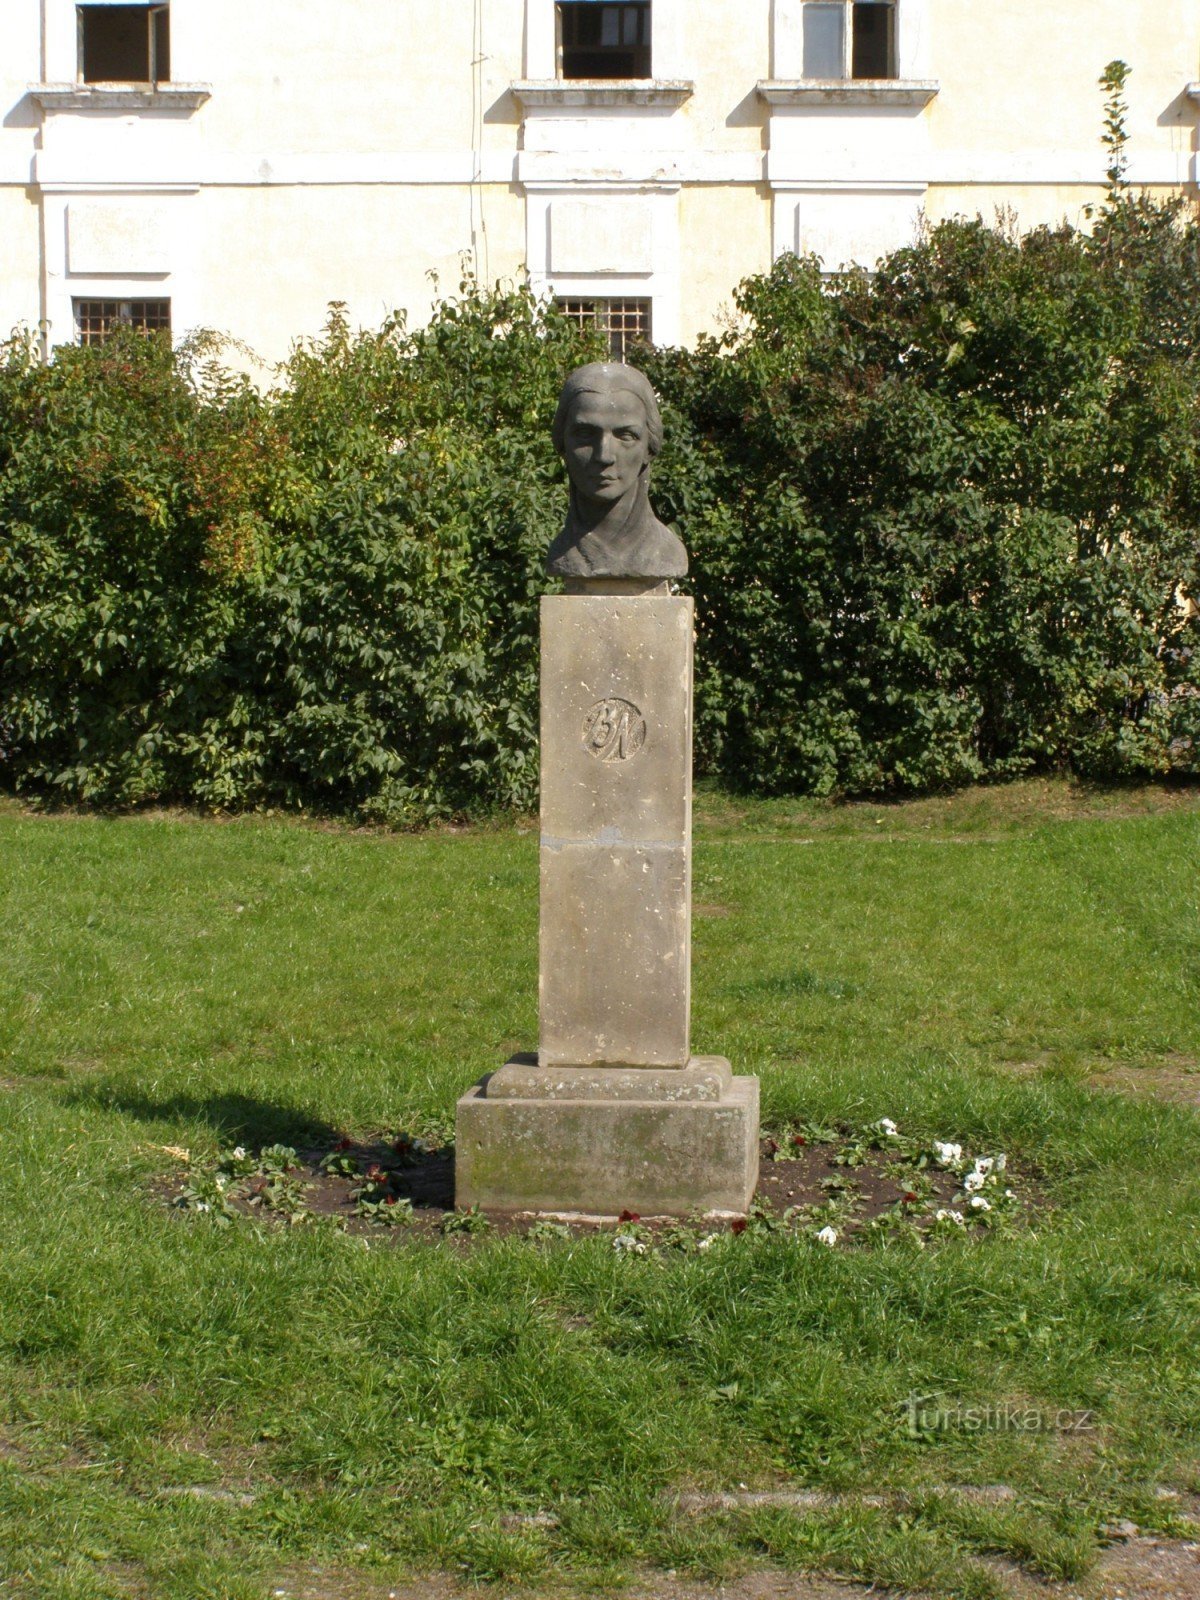 Josefov - monument till Bozena Němcová